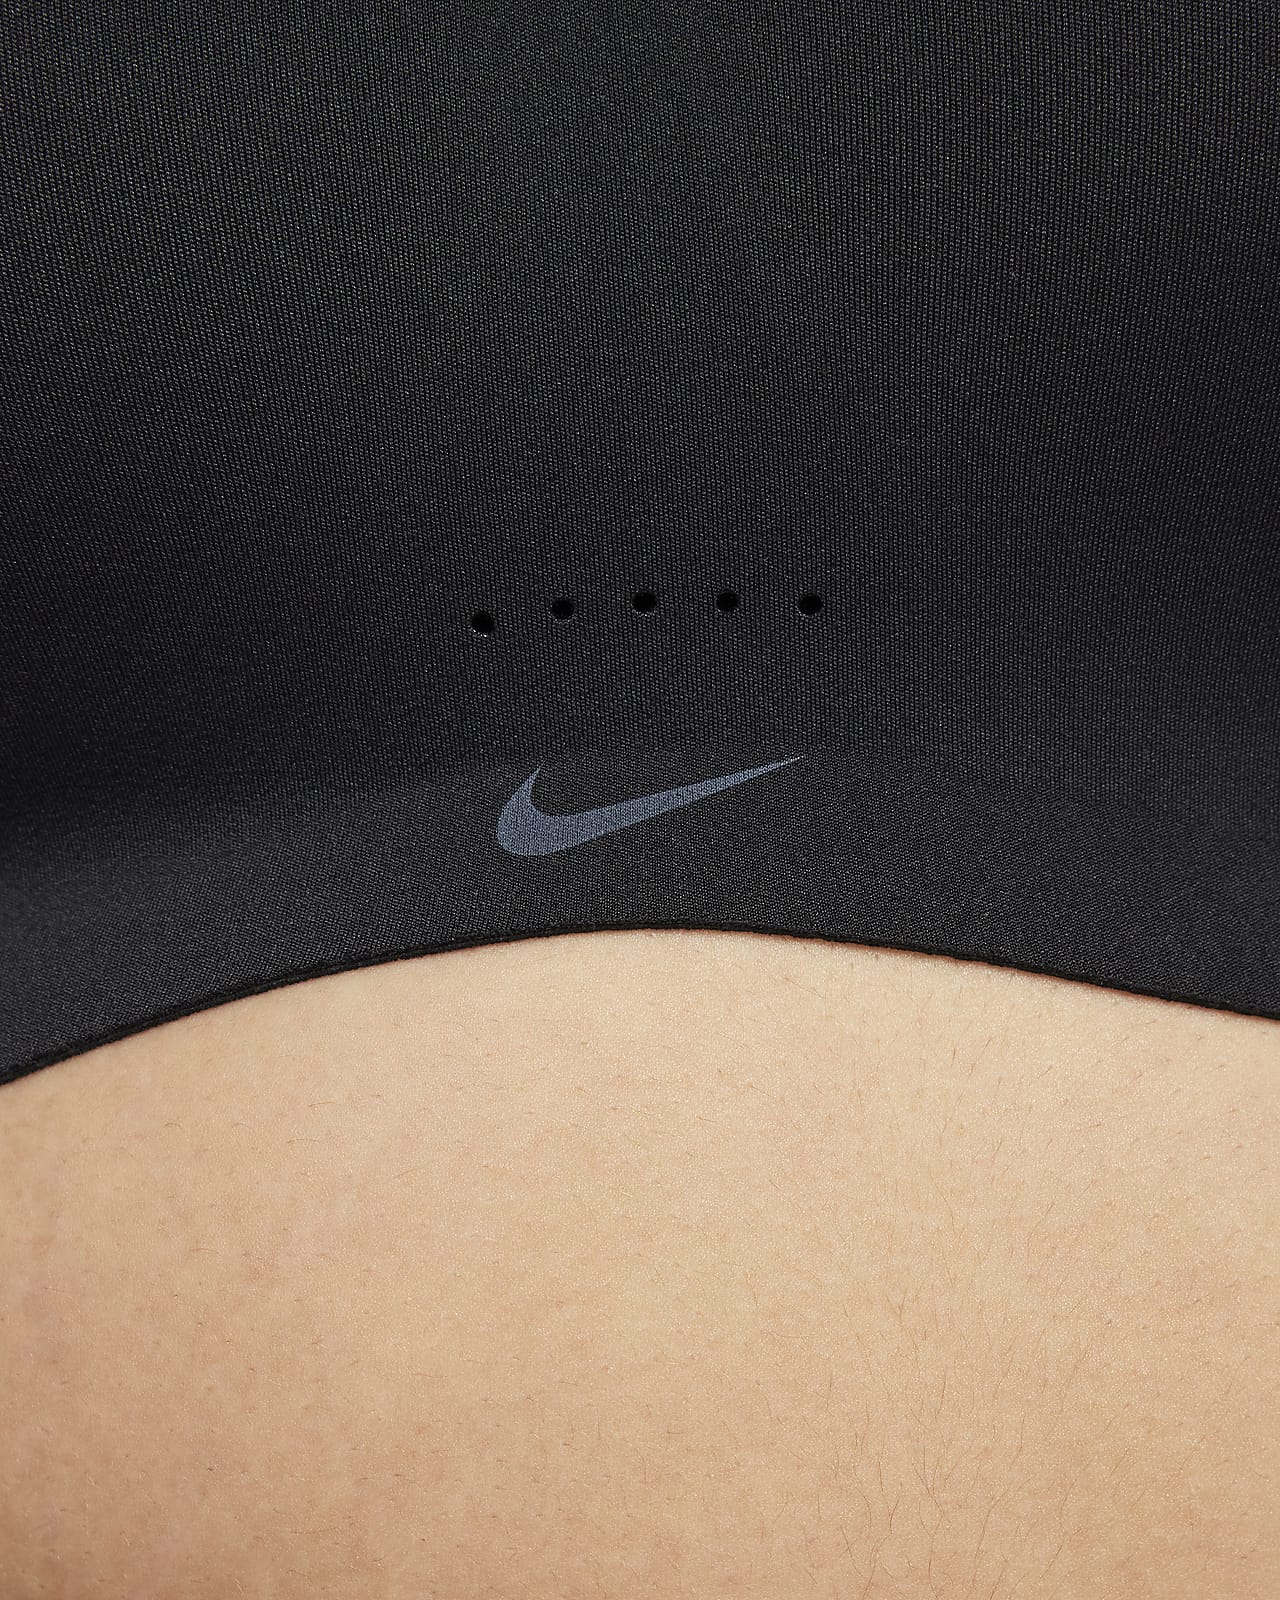 Nike Alate Minimalist Women's Light-Support Padded Sports Bra. Nike NO